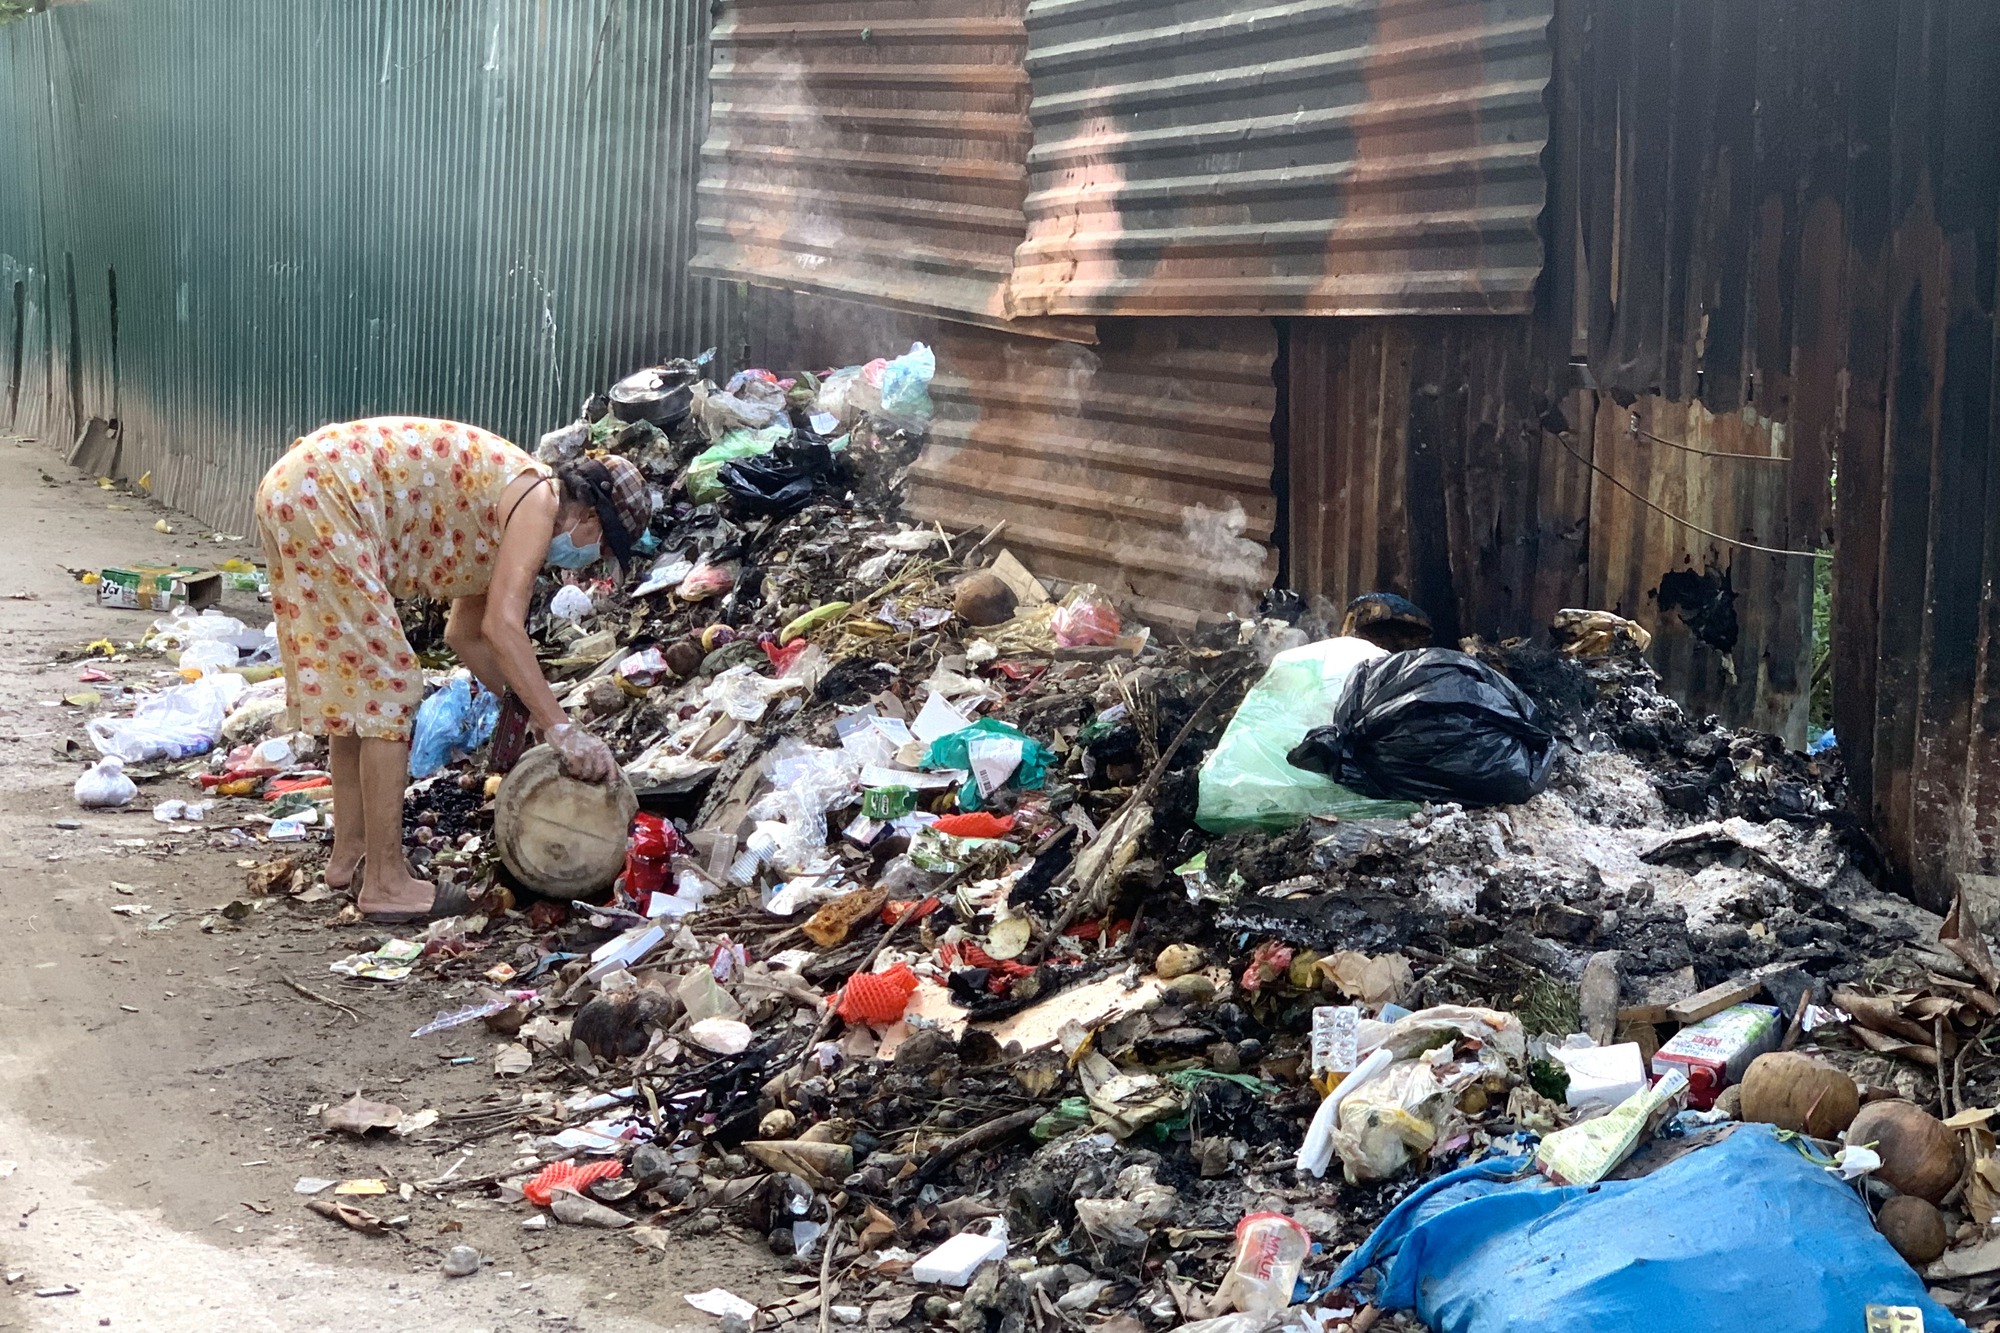 Có biển cấm kèm thông báo phạt tiền nhưng nhiều người dân tại Hà Nội vẫn bất chấp đổ trộm rác thải - Ảnh 3.